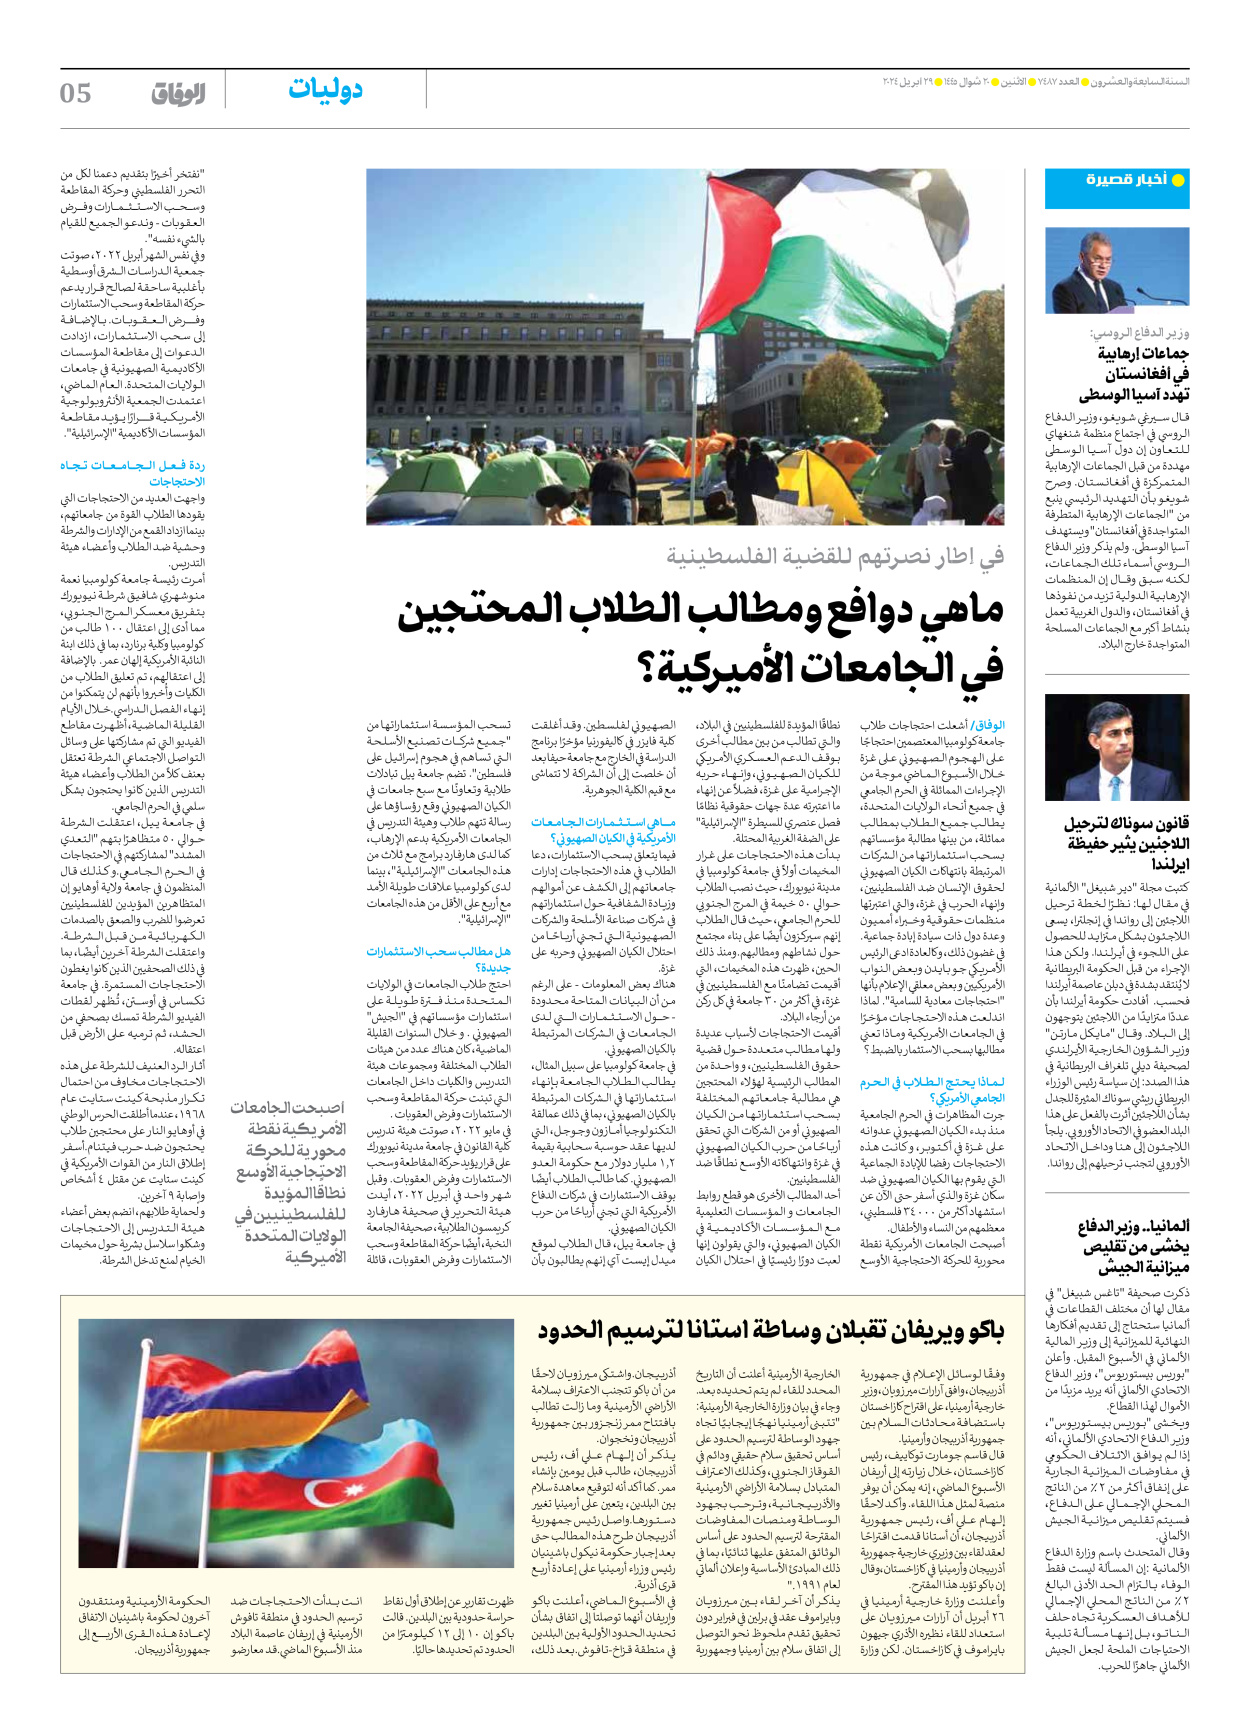 صحیفة ایران الدولیة الوفاق - العدد سبعة آلاف وأربعمائة وسبعة وثمانون - ٢٩ أبريل ٢٠٢٤ - الصفحة ٥